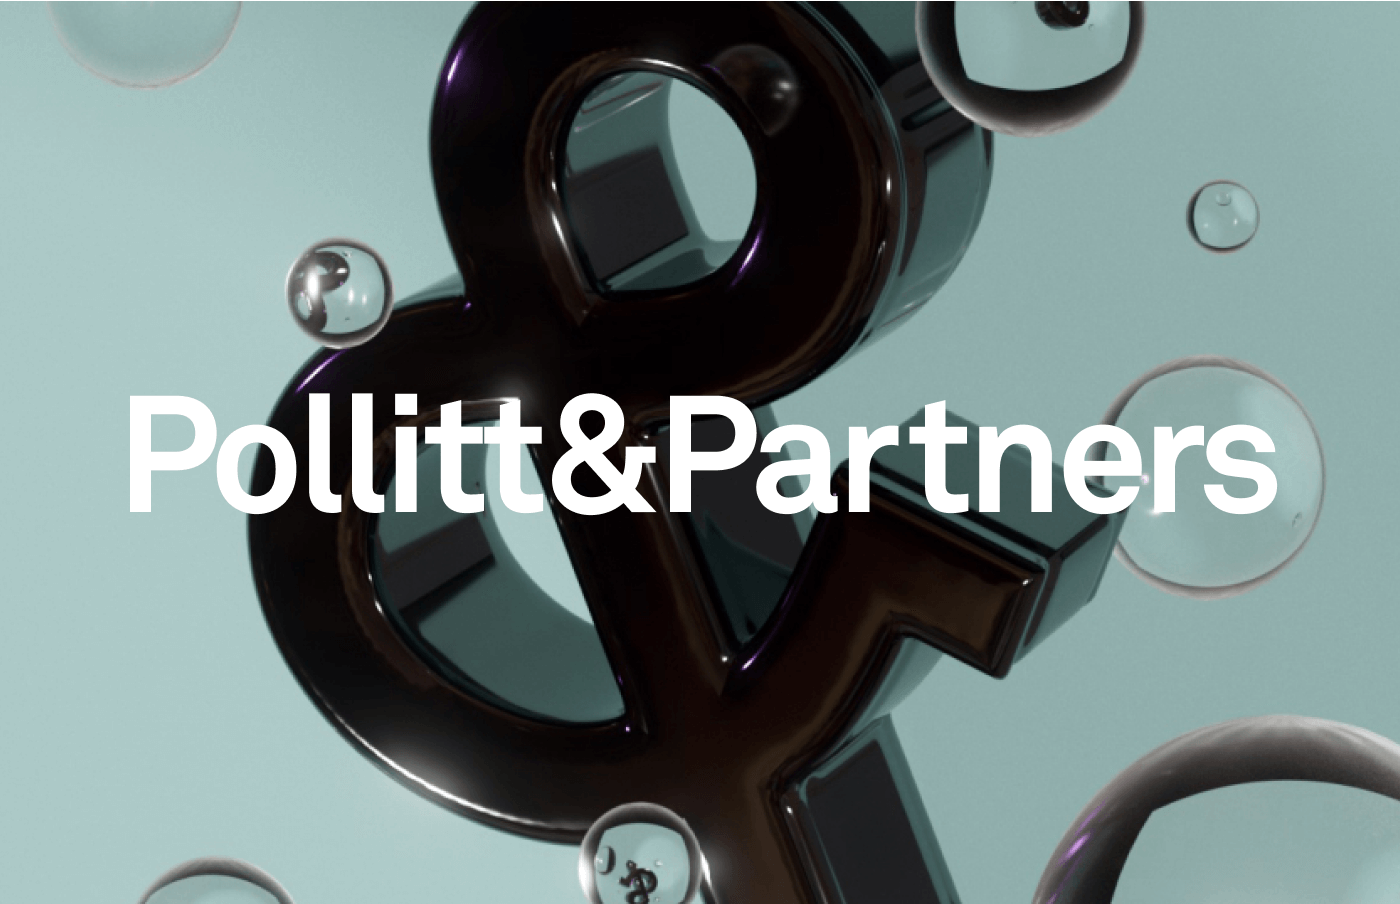 Pollitt & Partners